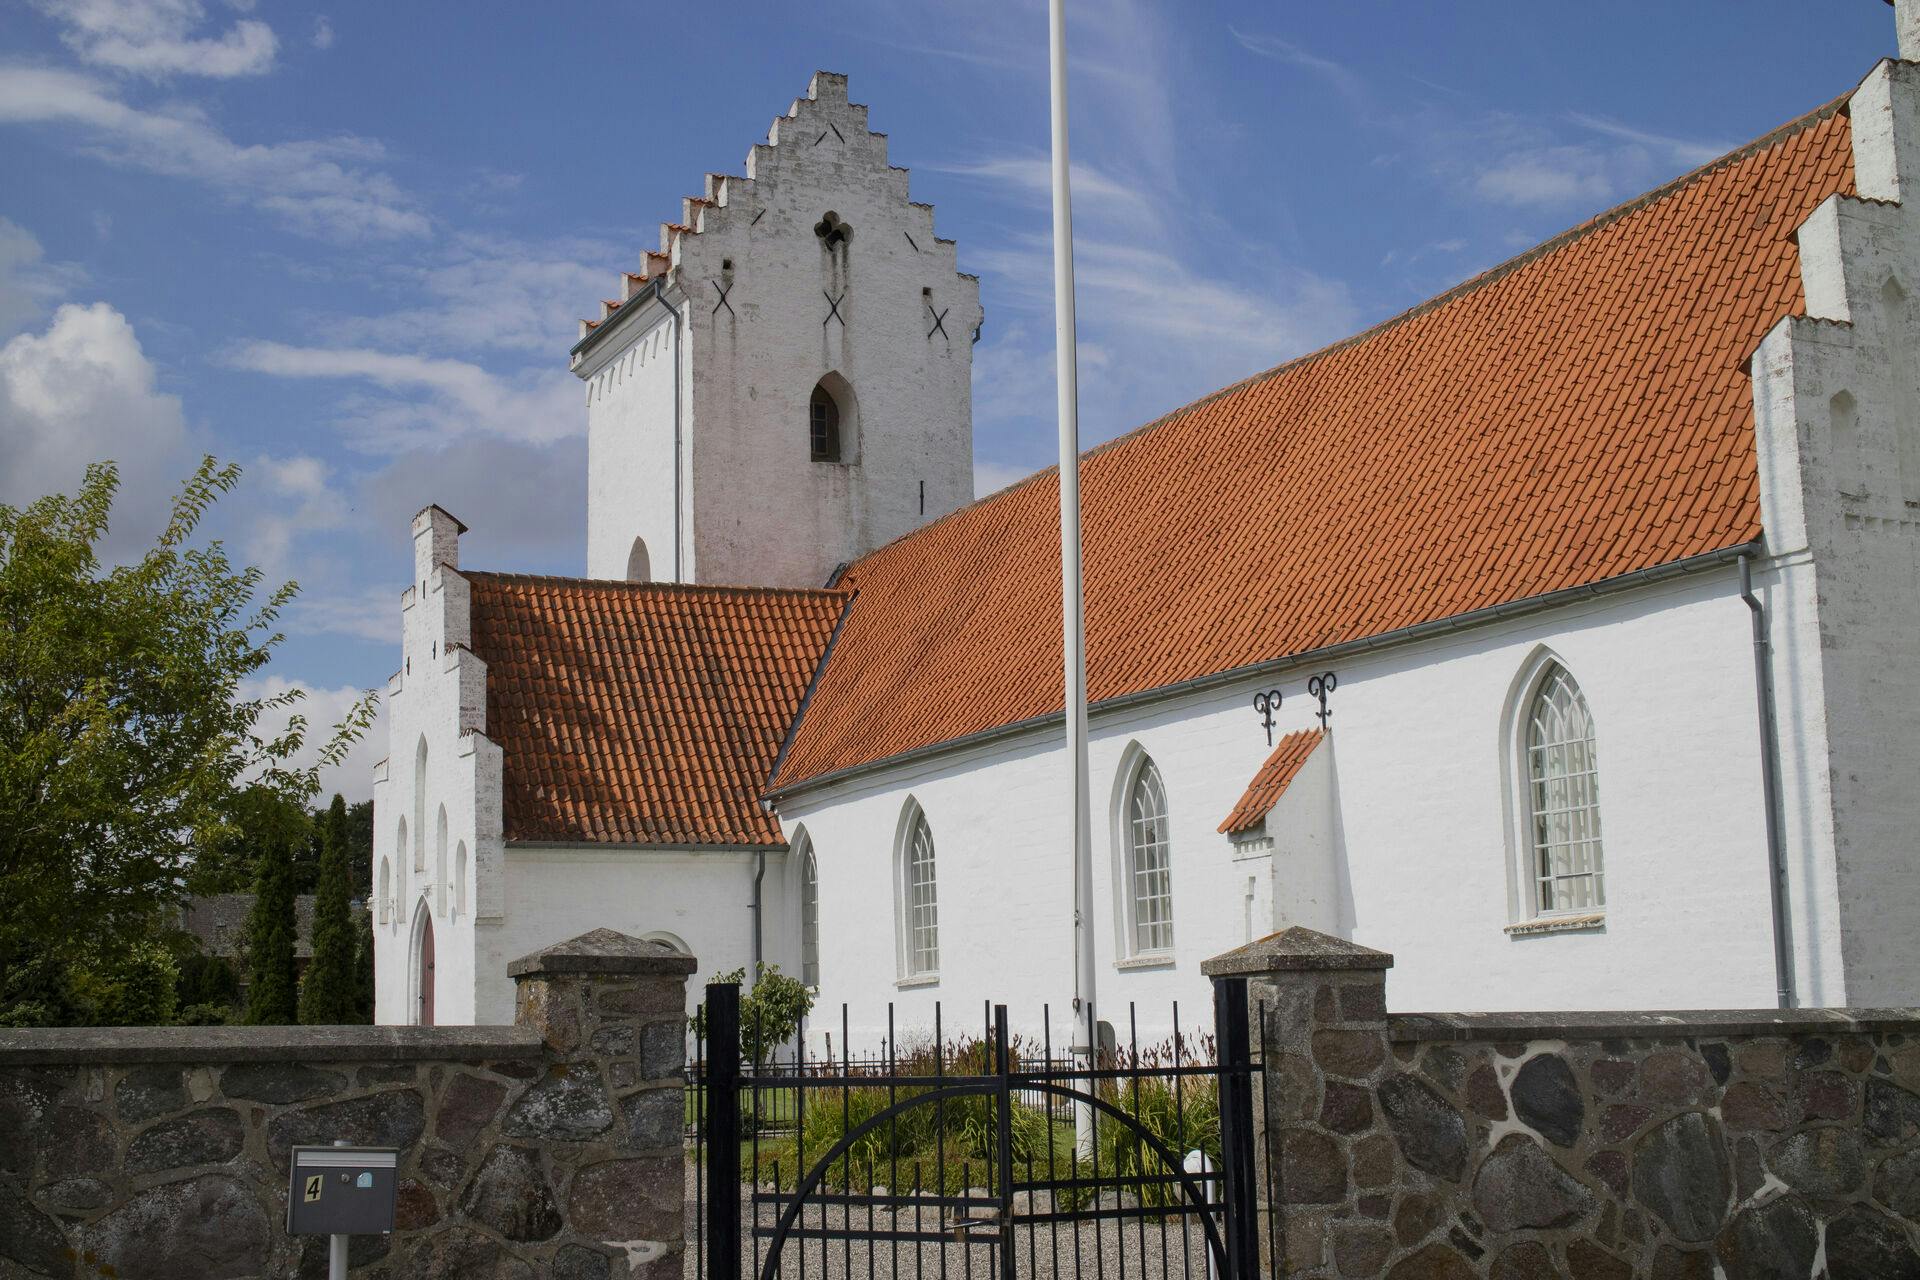 Spjellerup Kirkes i weekenden udsat for omfattende hærværk. 